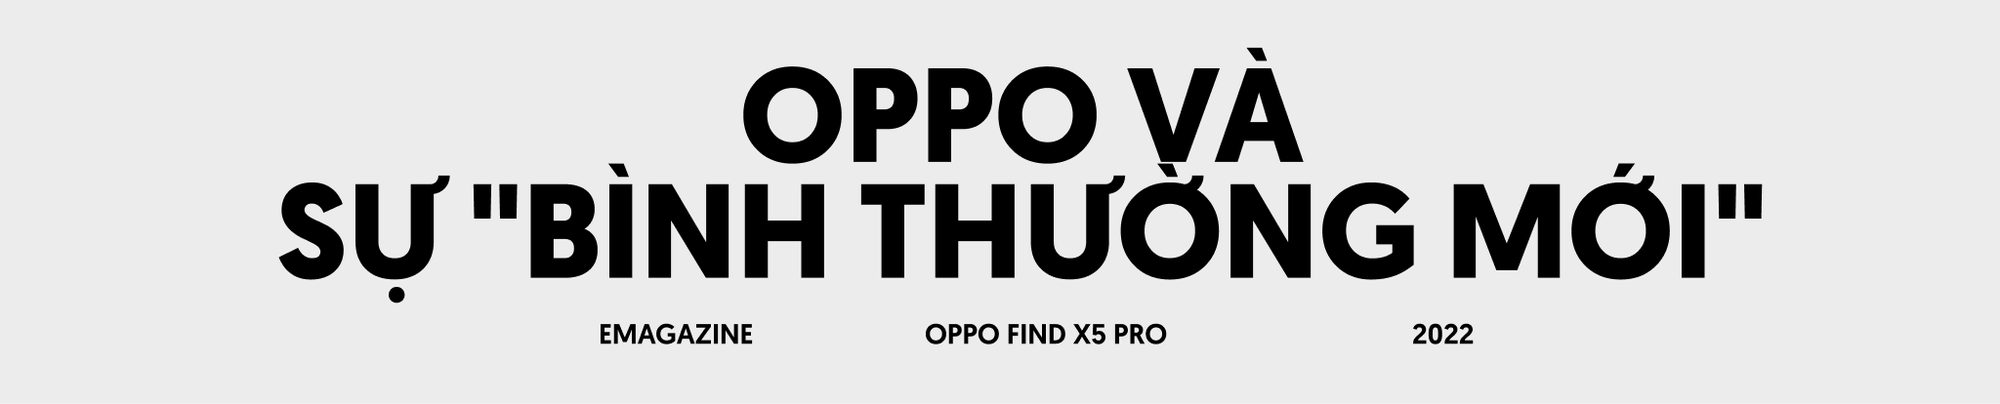 Đánh giá OPPO Find X5 Pro: Khi OPPO trở về với sự &quot;bình thường mới&quot; - Ảnh 2.